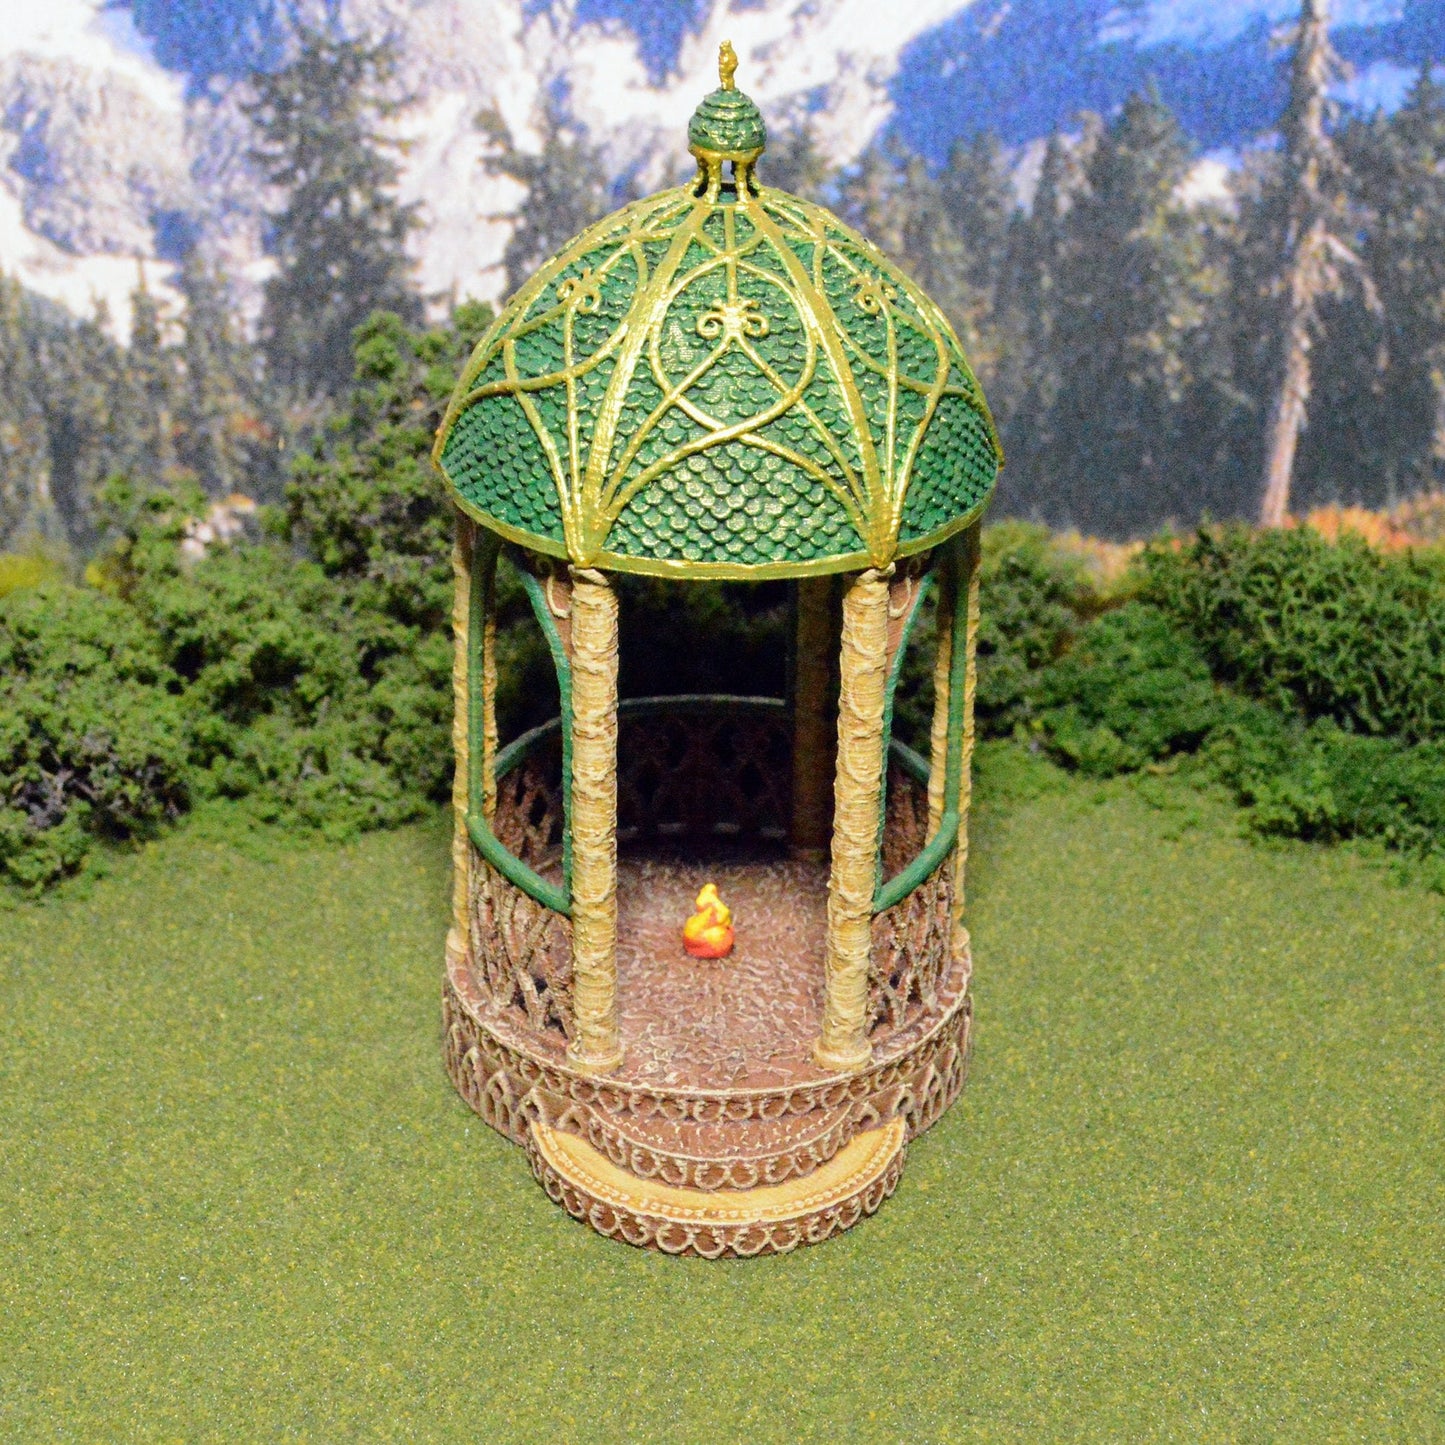 Elven Shrine of Solace 15mm 28mm 32mm for D&D Terrain, DnD Pathfinder Elven Gazebo, Gift for Tabletop Gamers